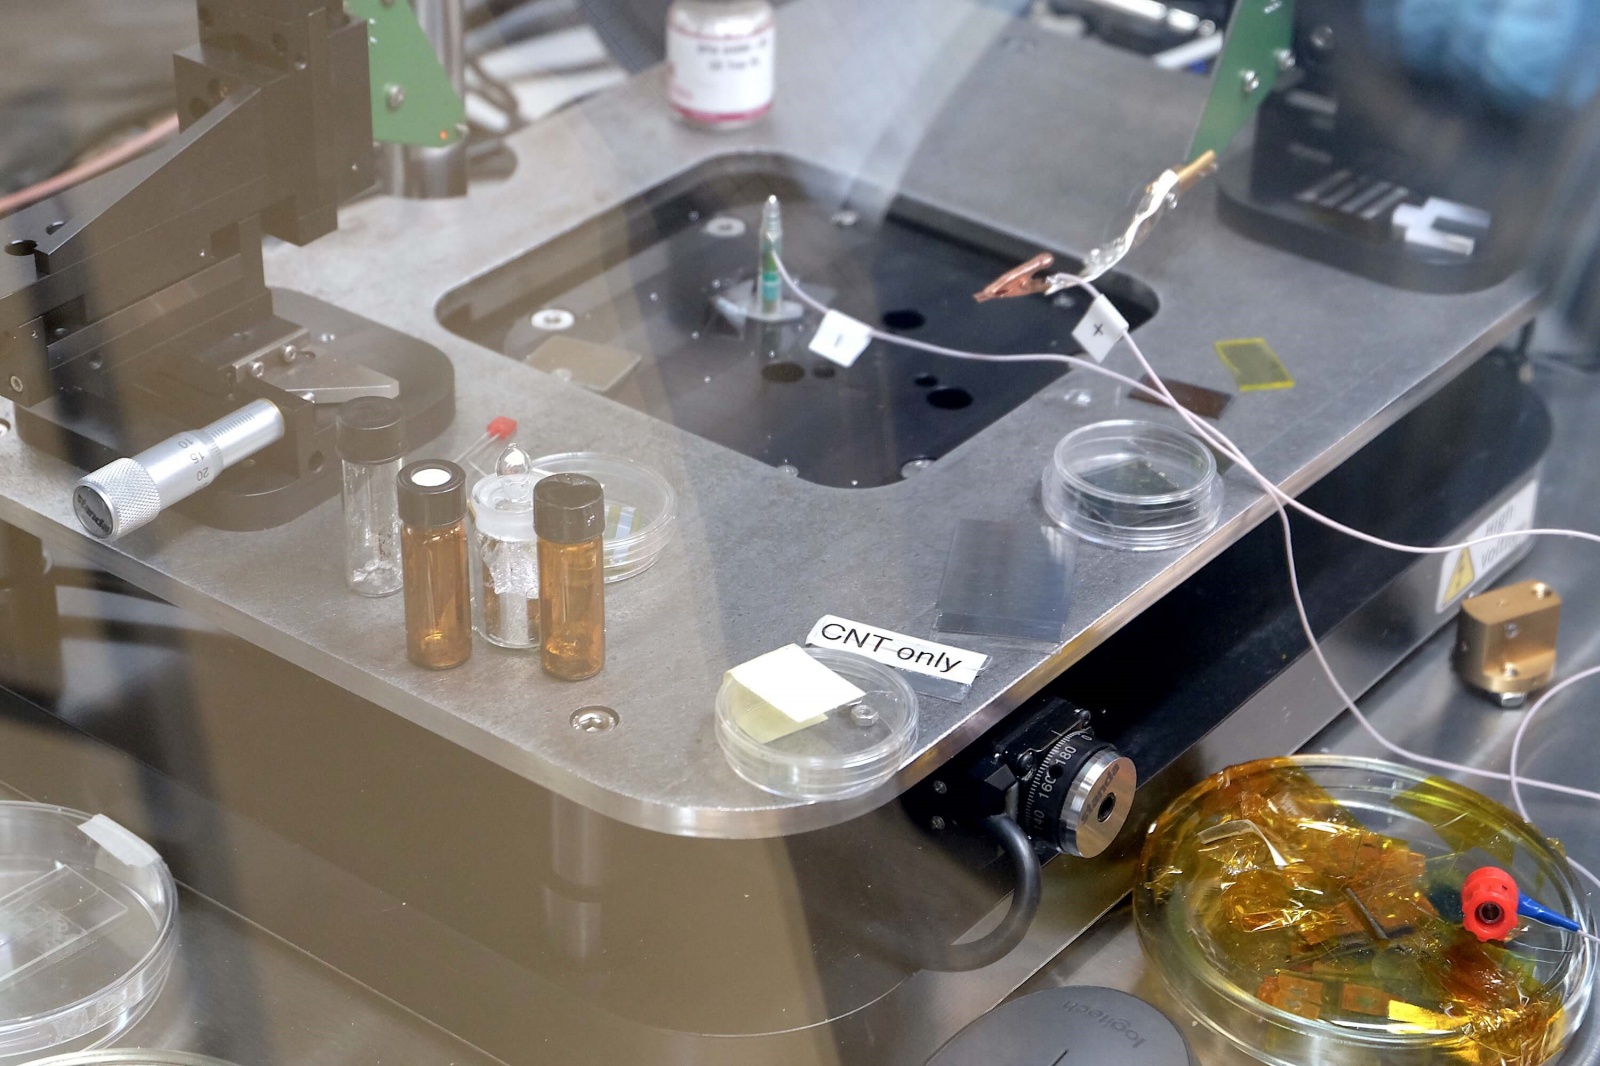 Фотоэкскурсия: что делают в лаборатории гибридной нанофотоники и оптоэлектроники Нового физтеха ИТМО - 19